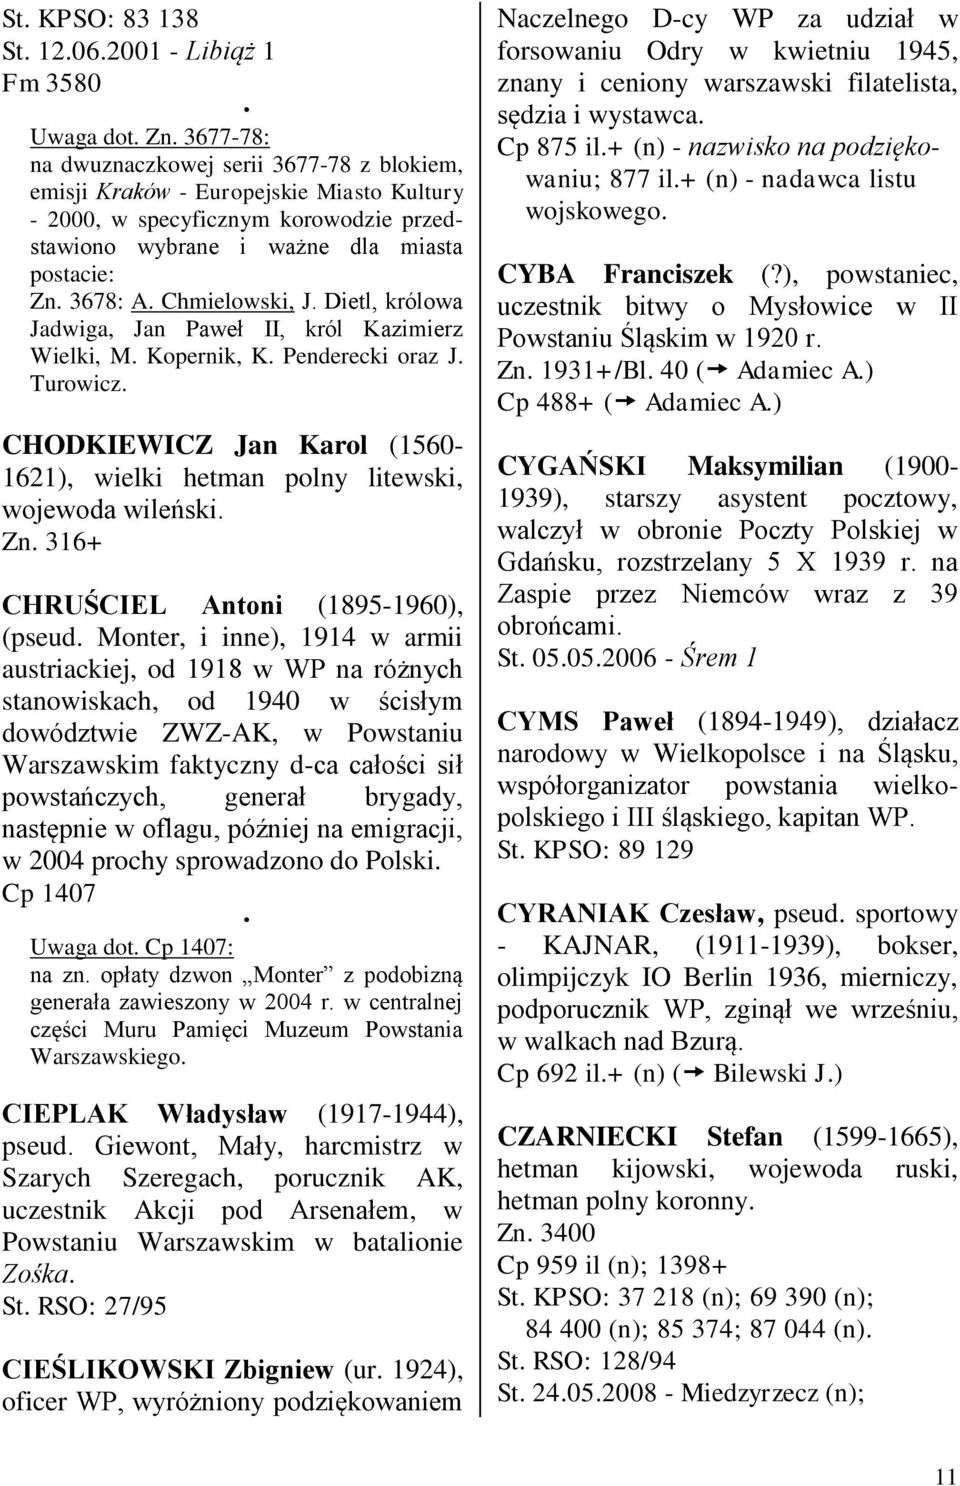 Chmielowski, J. Dietl, królowa Jadwiga, Jan Paweł II, król Kazimierz Wielki, M. Kopernik, K. Penderecki oraz J. Turowicz.